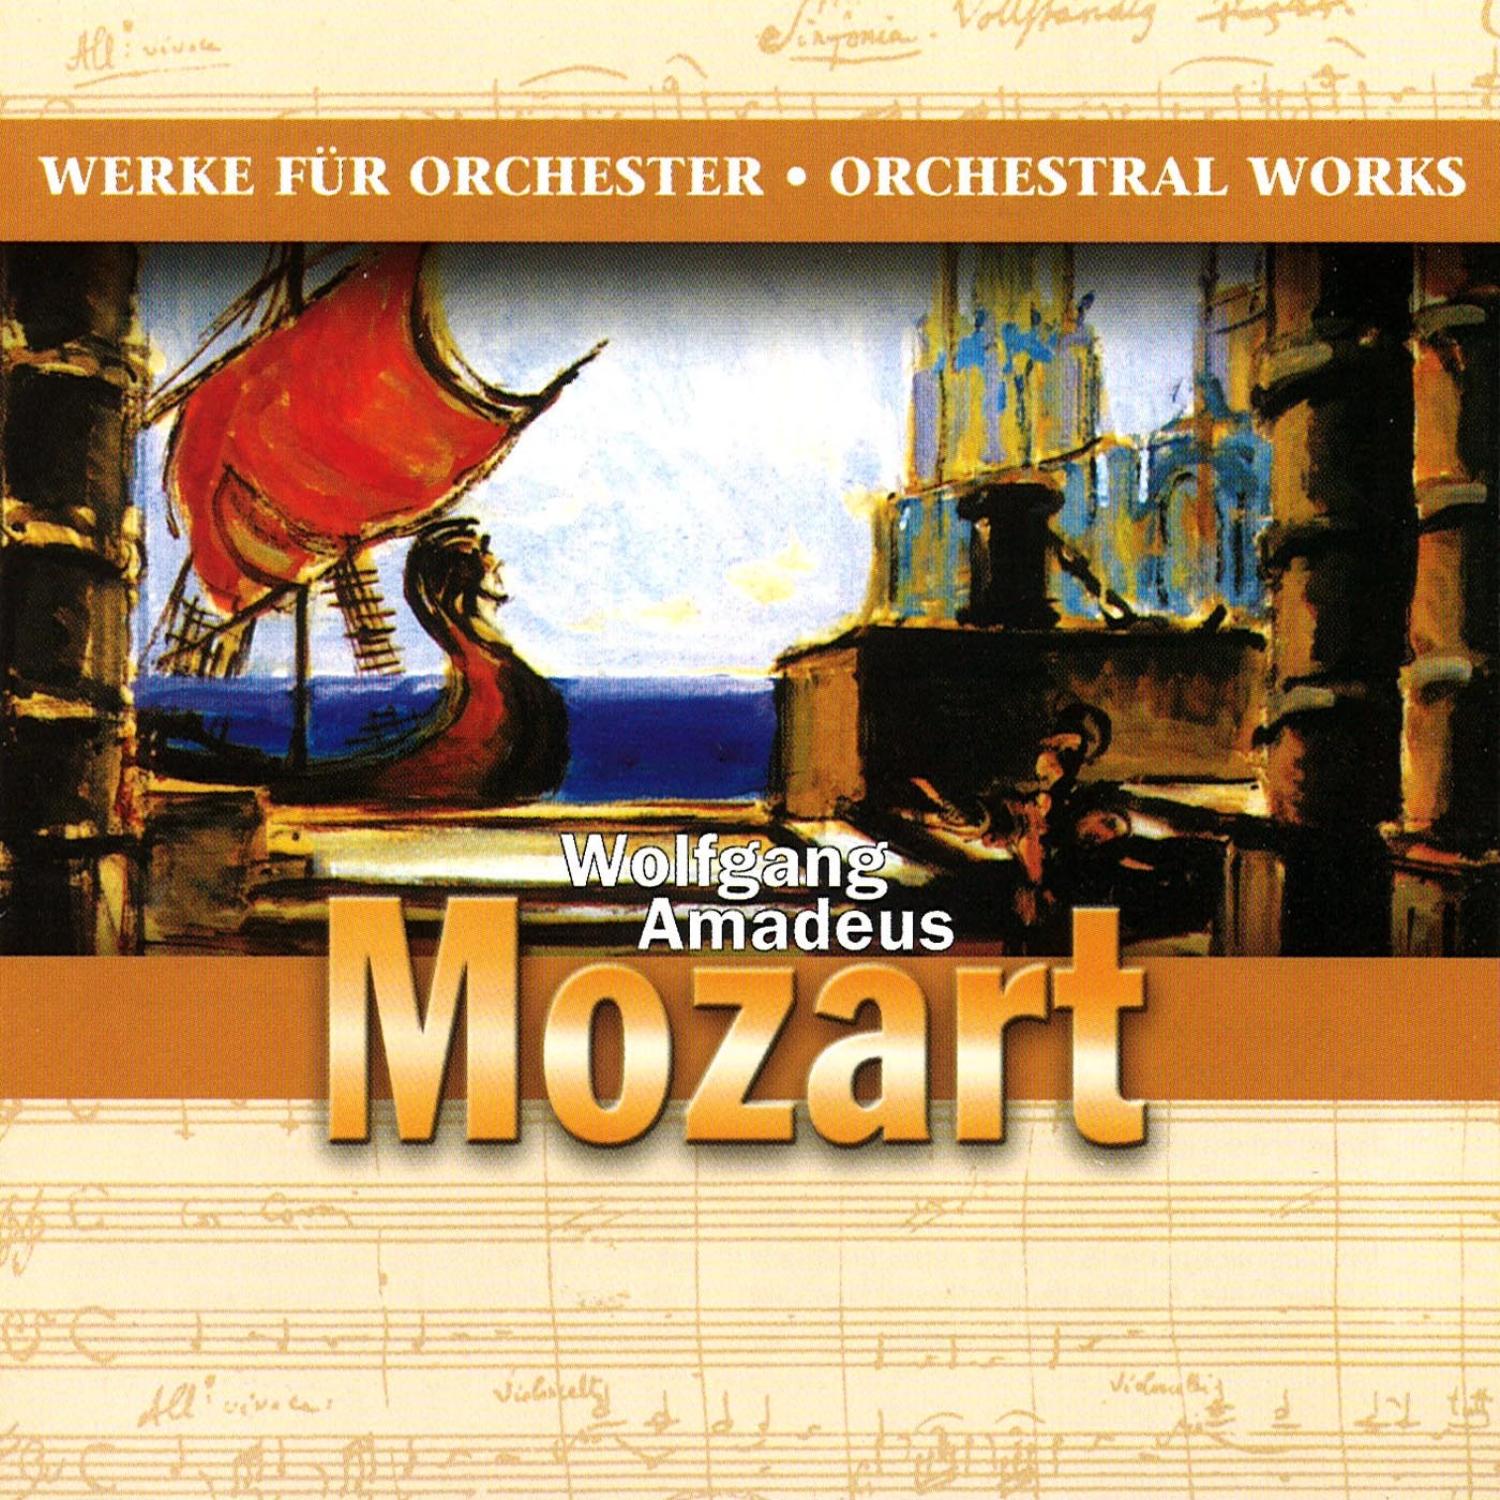 Wolfgang Amadeus Mozart - Werke für Orchester